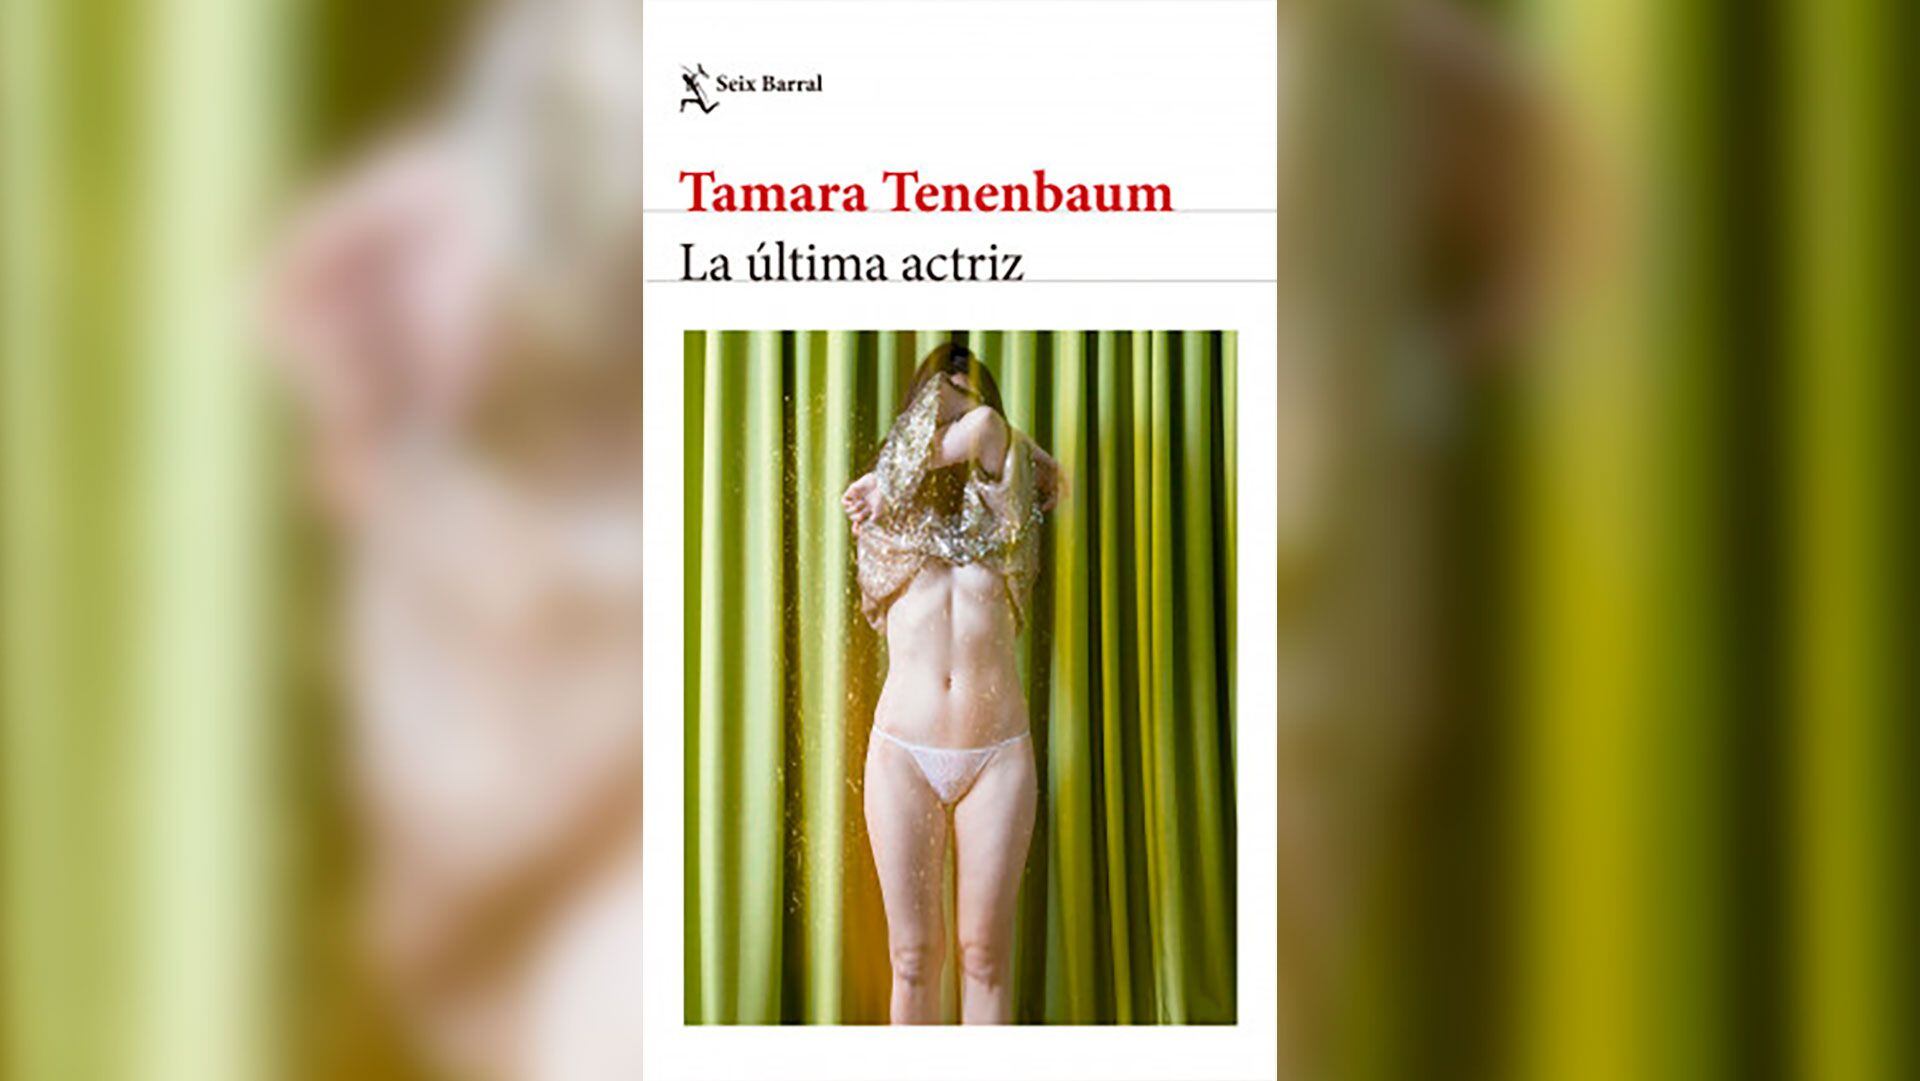 Tamara Tenenbaum